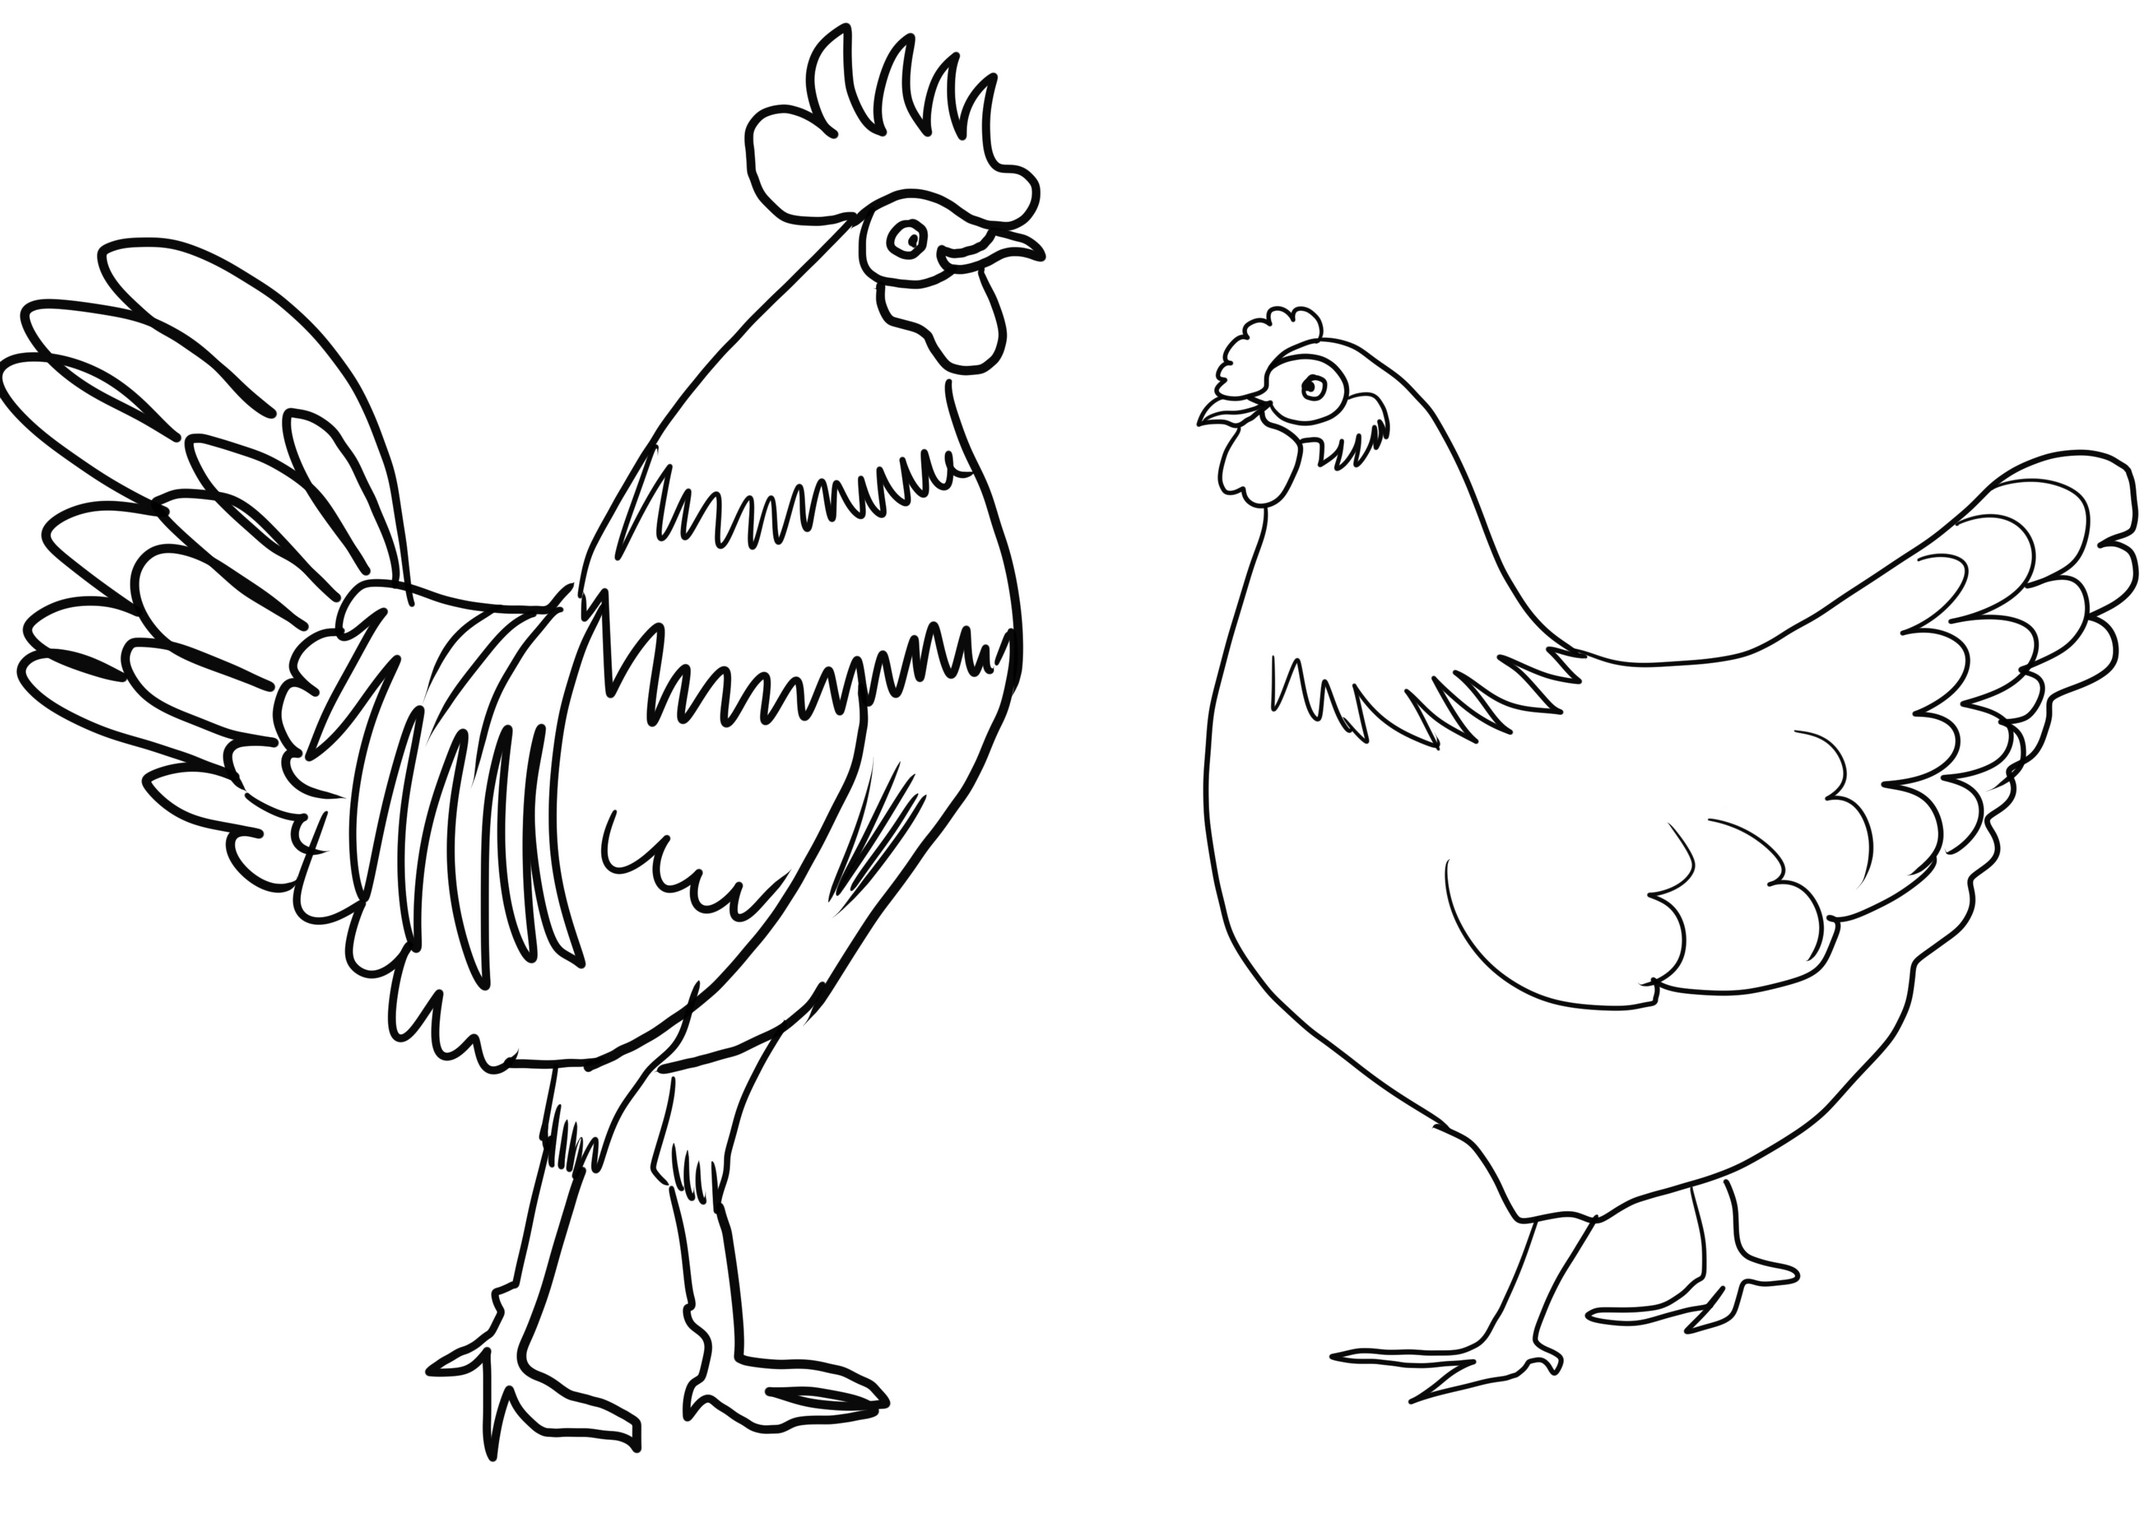 Disegno di gallina realistico da colorare